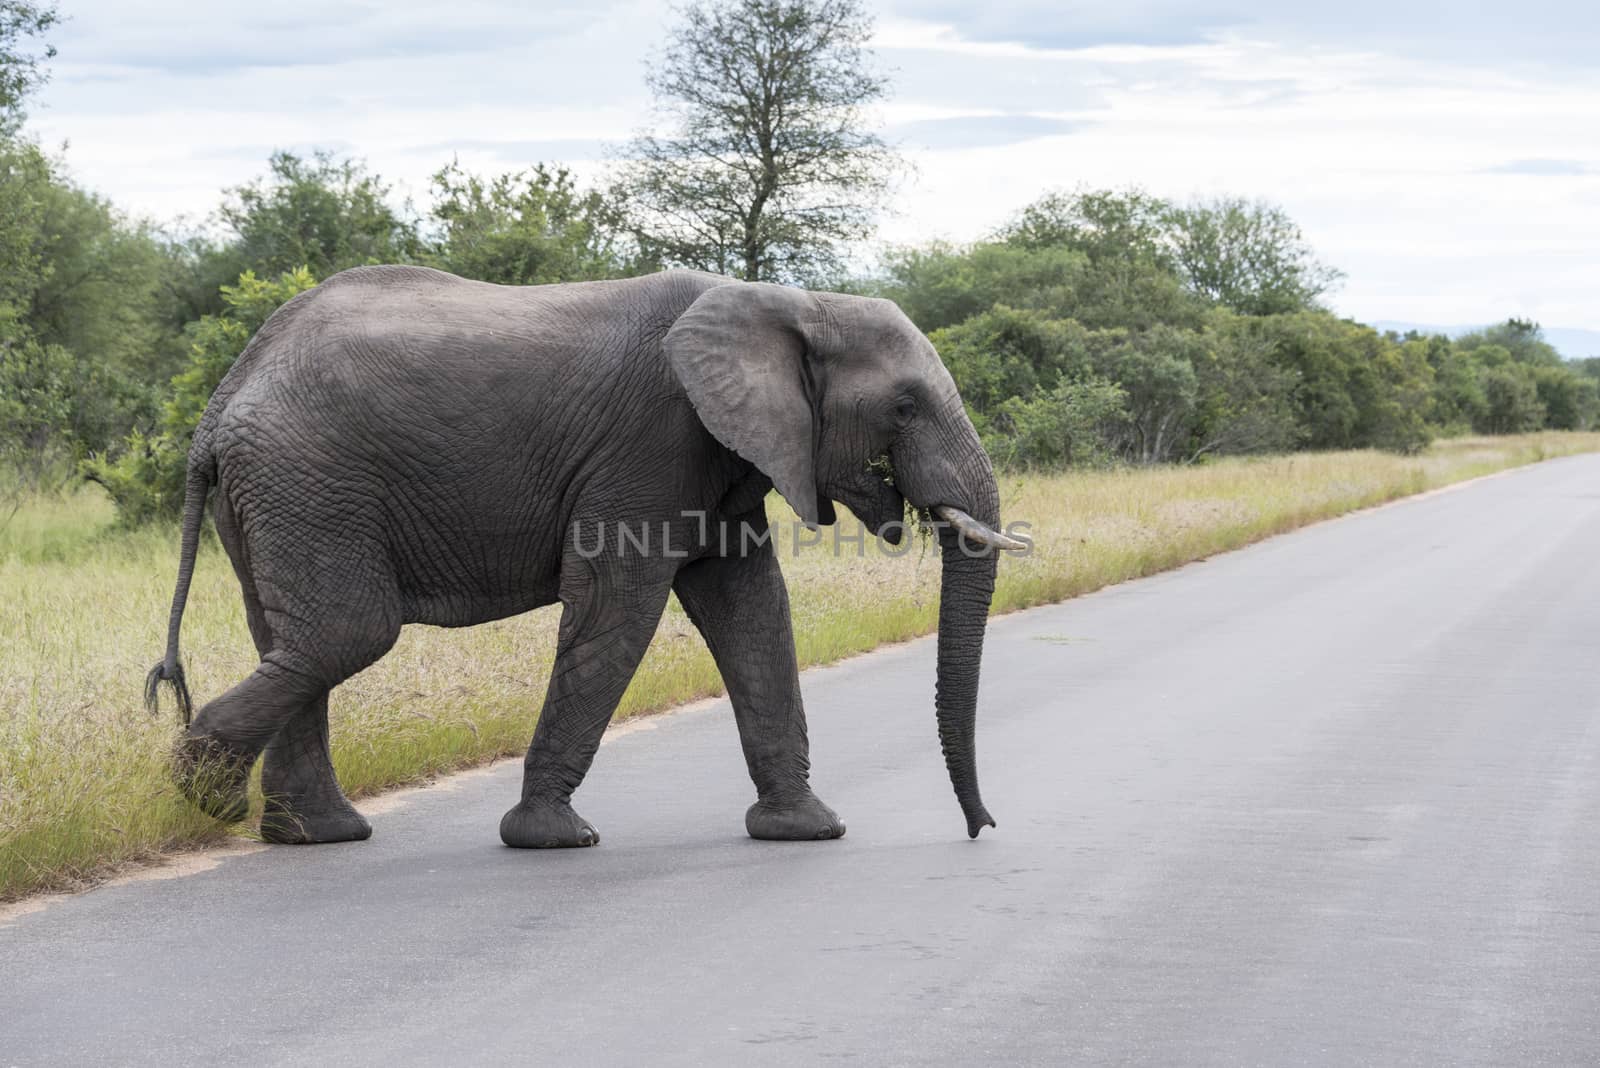 big elephant in kruger park by compuinfoto